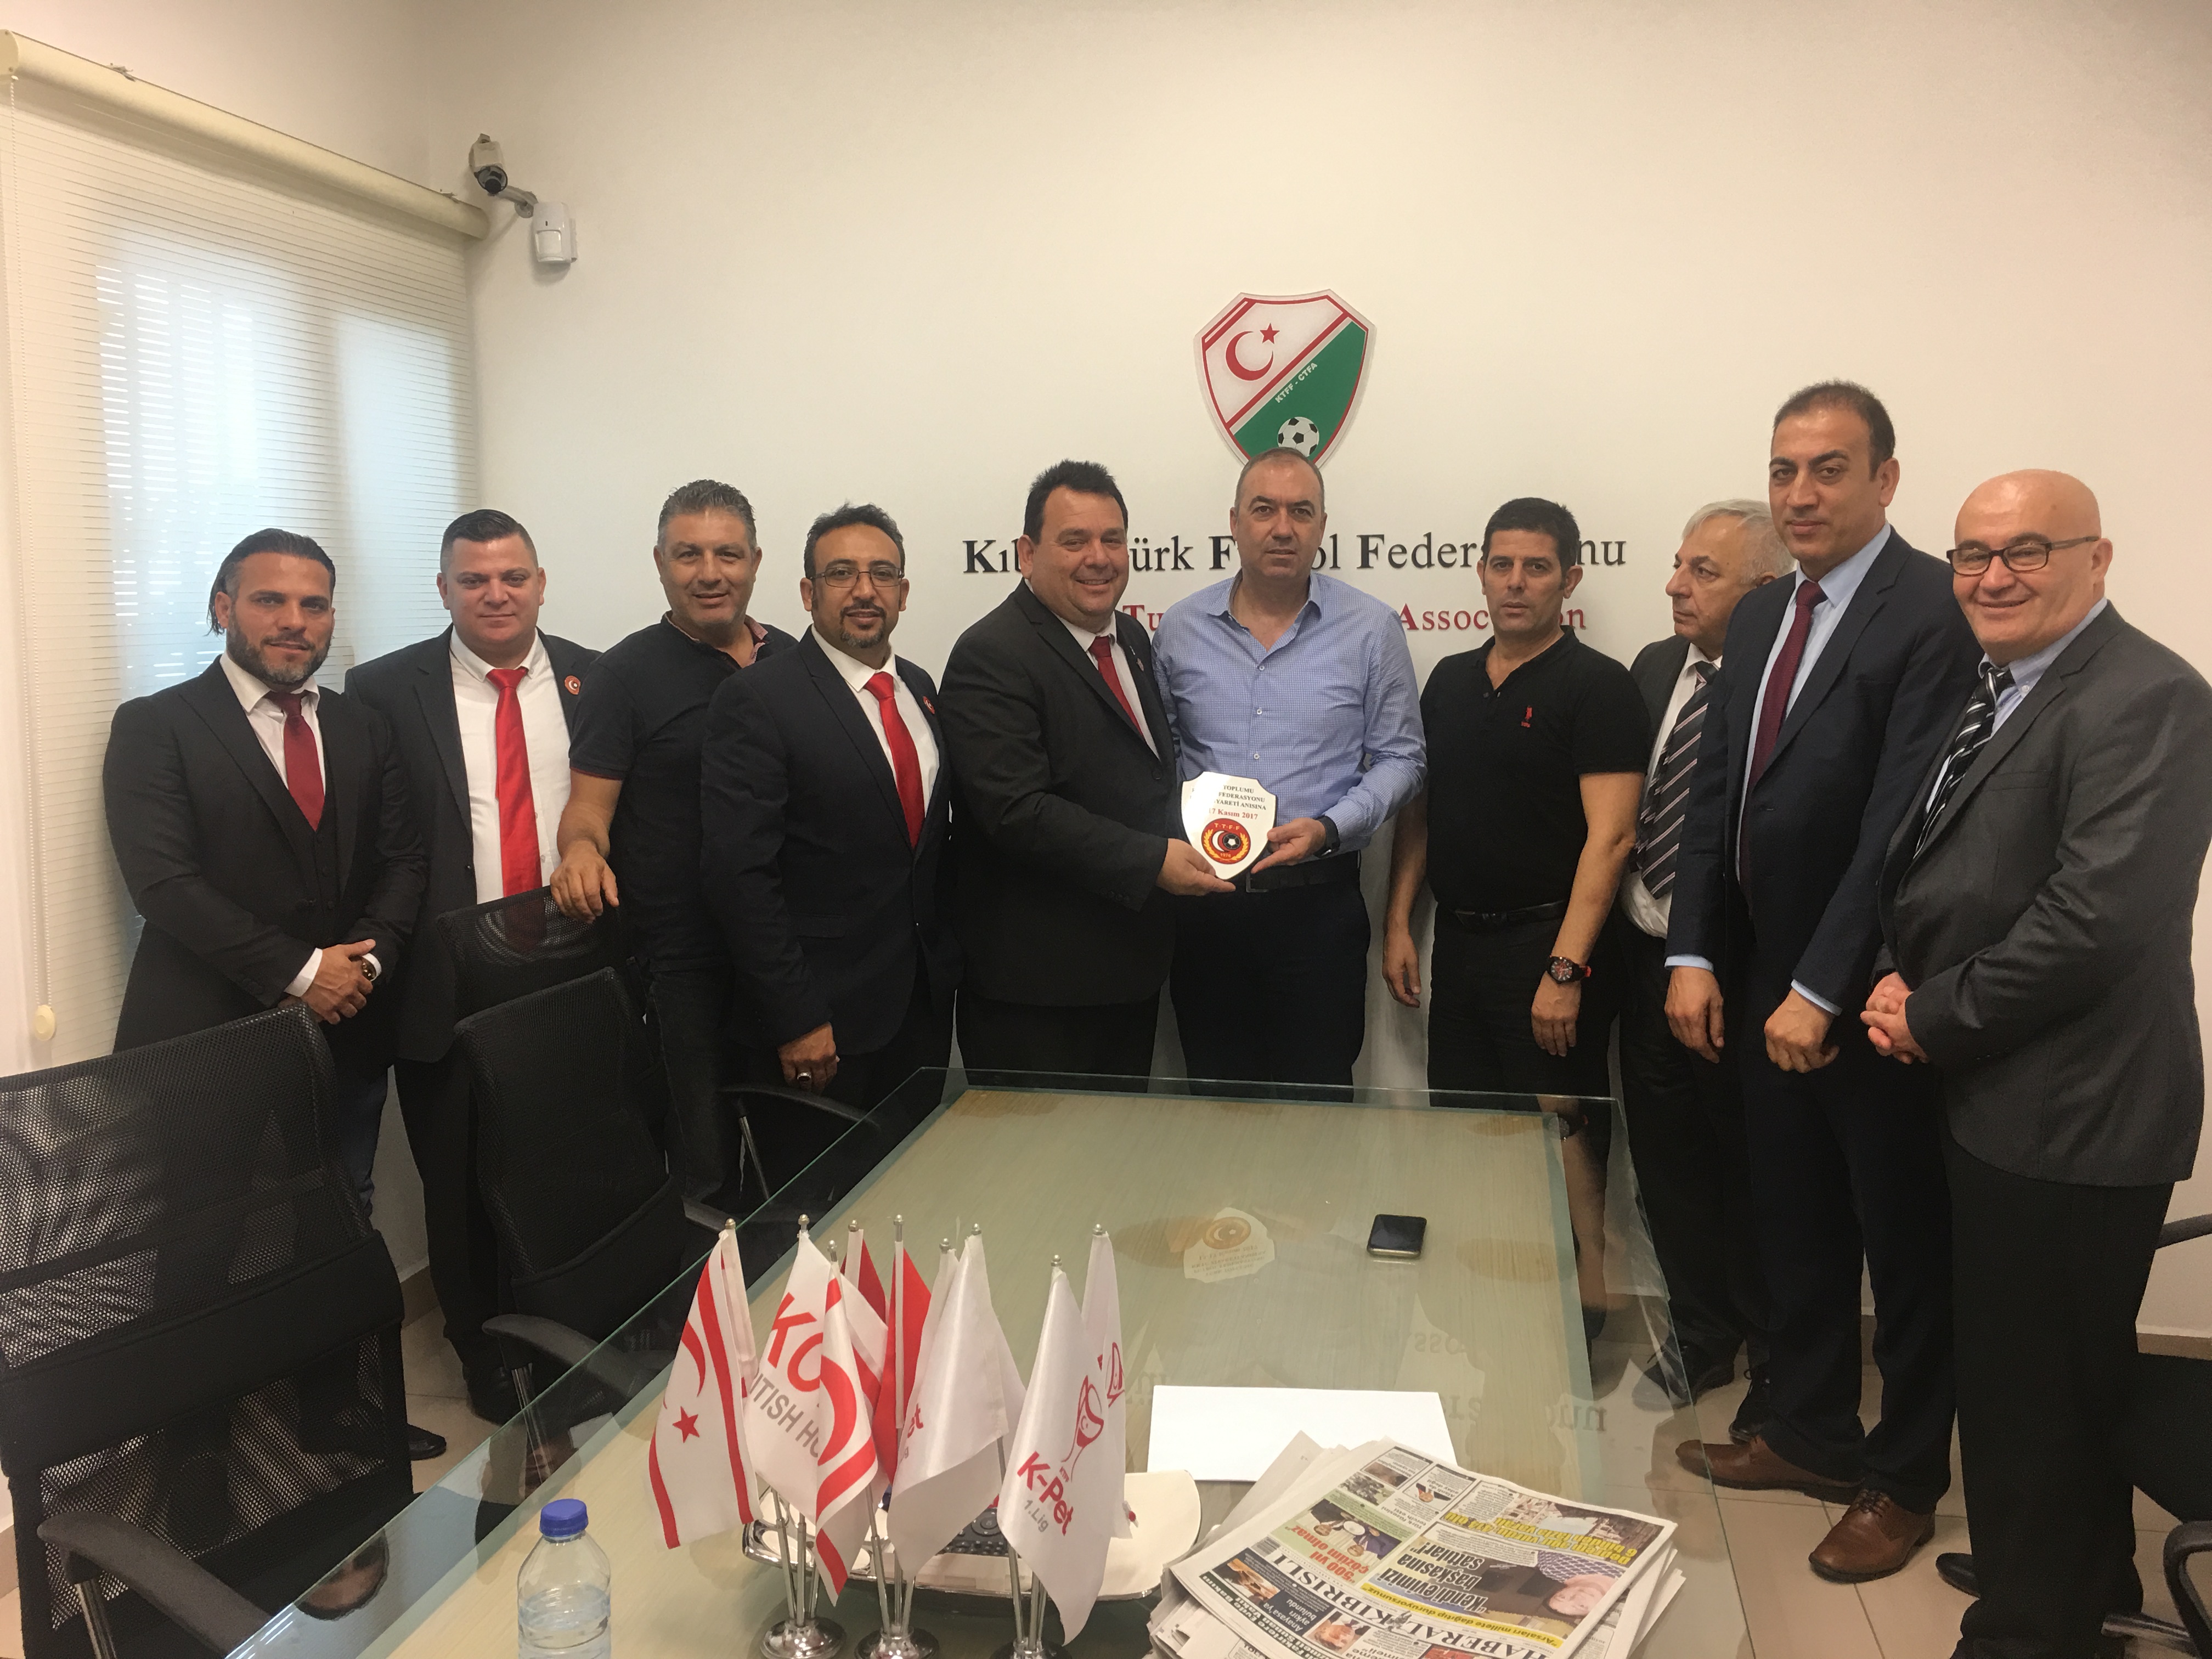 Londra Türk Toplumu Futbol Federasyonu'ndan KTFF'ye Ziyaret 